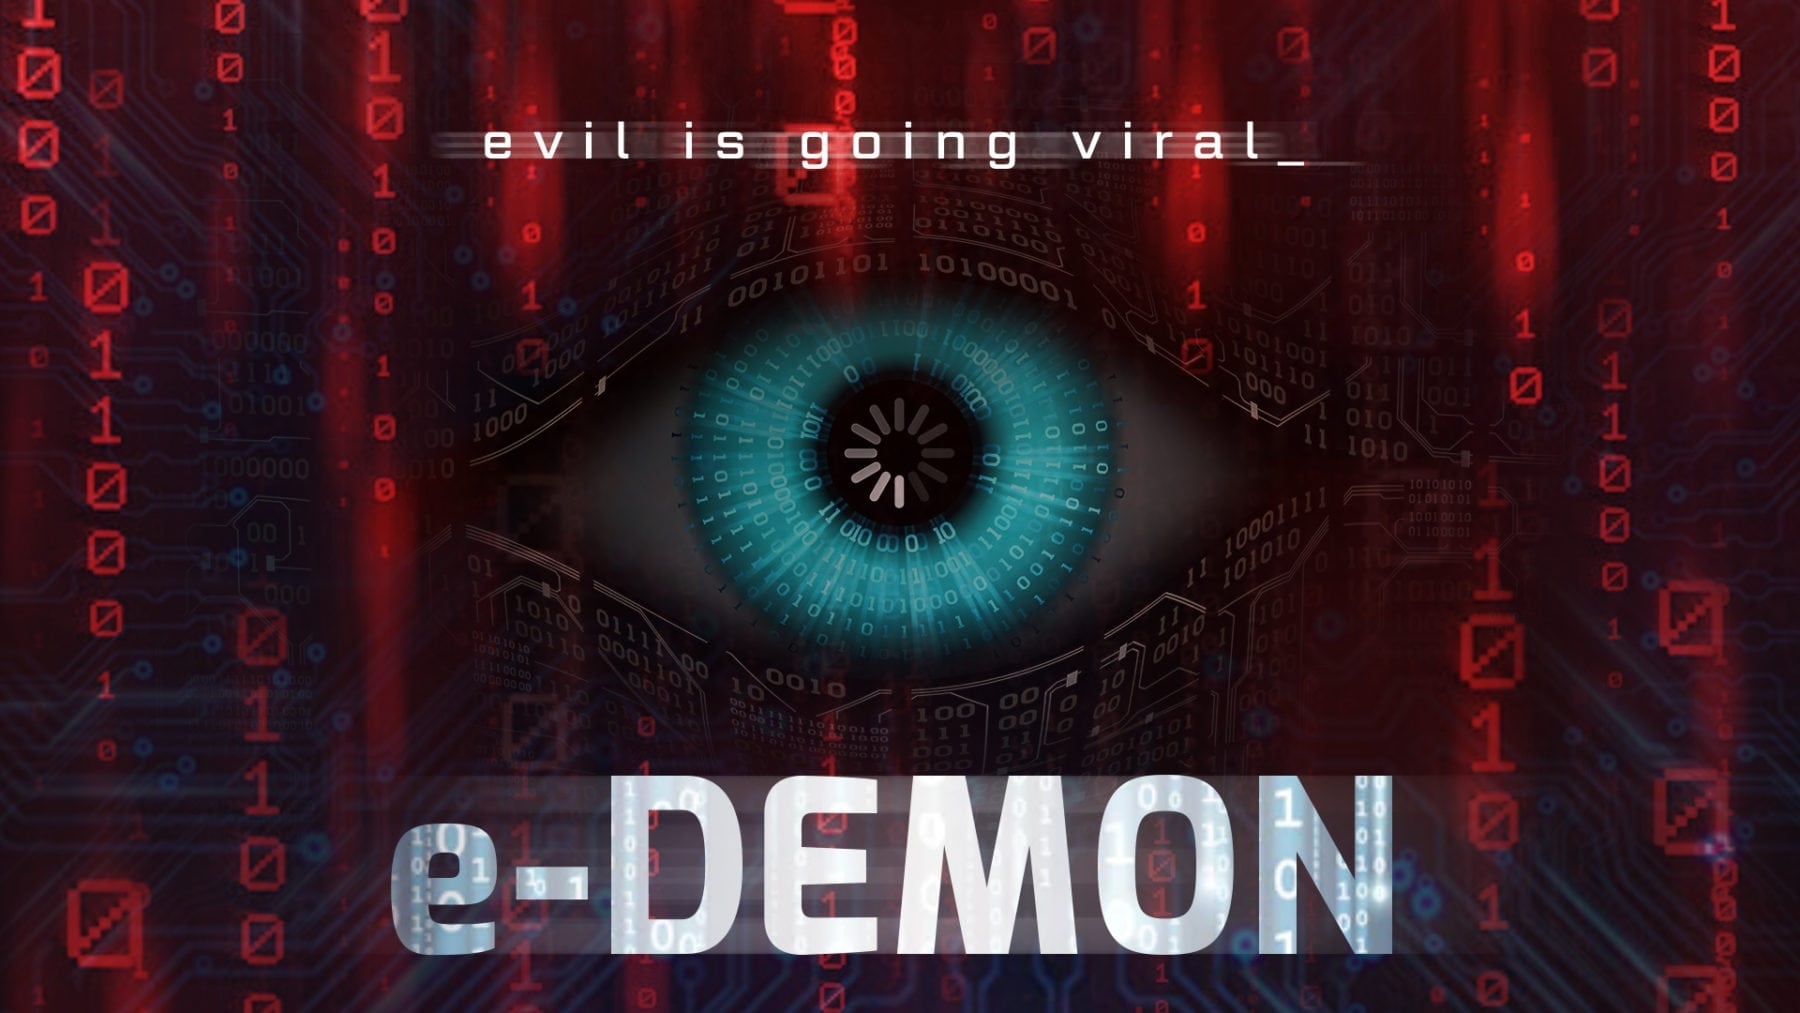 E-Demon